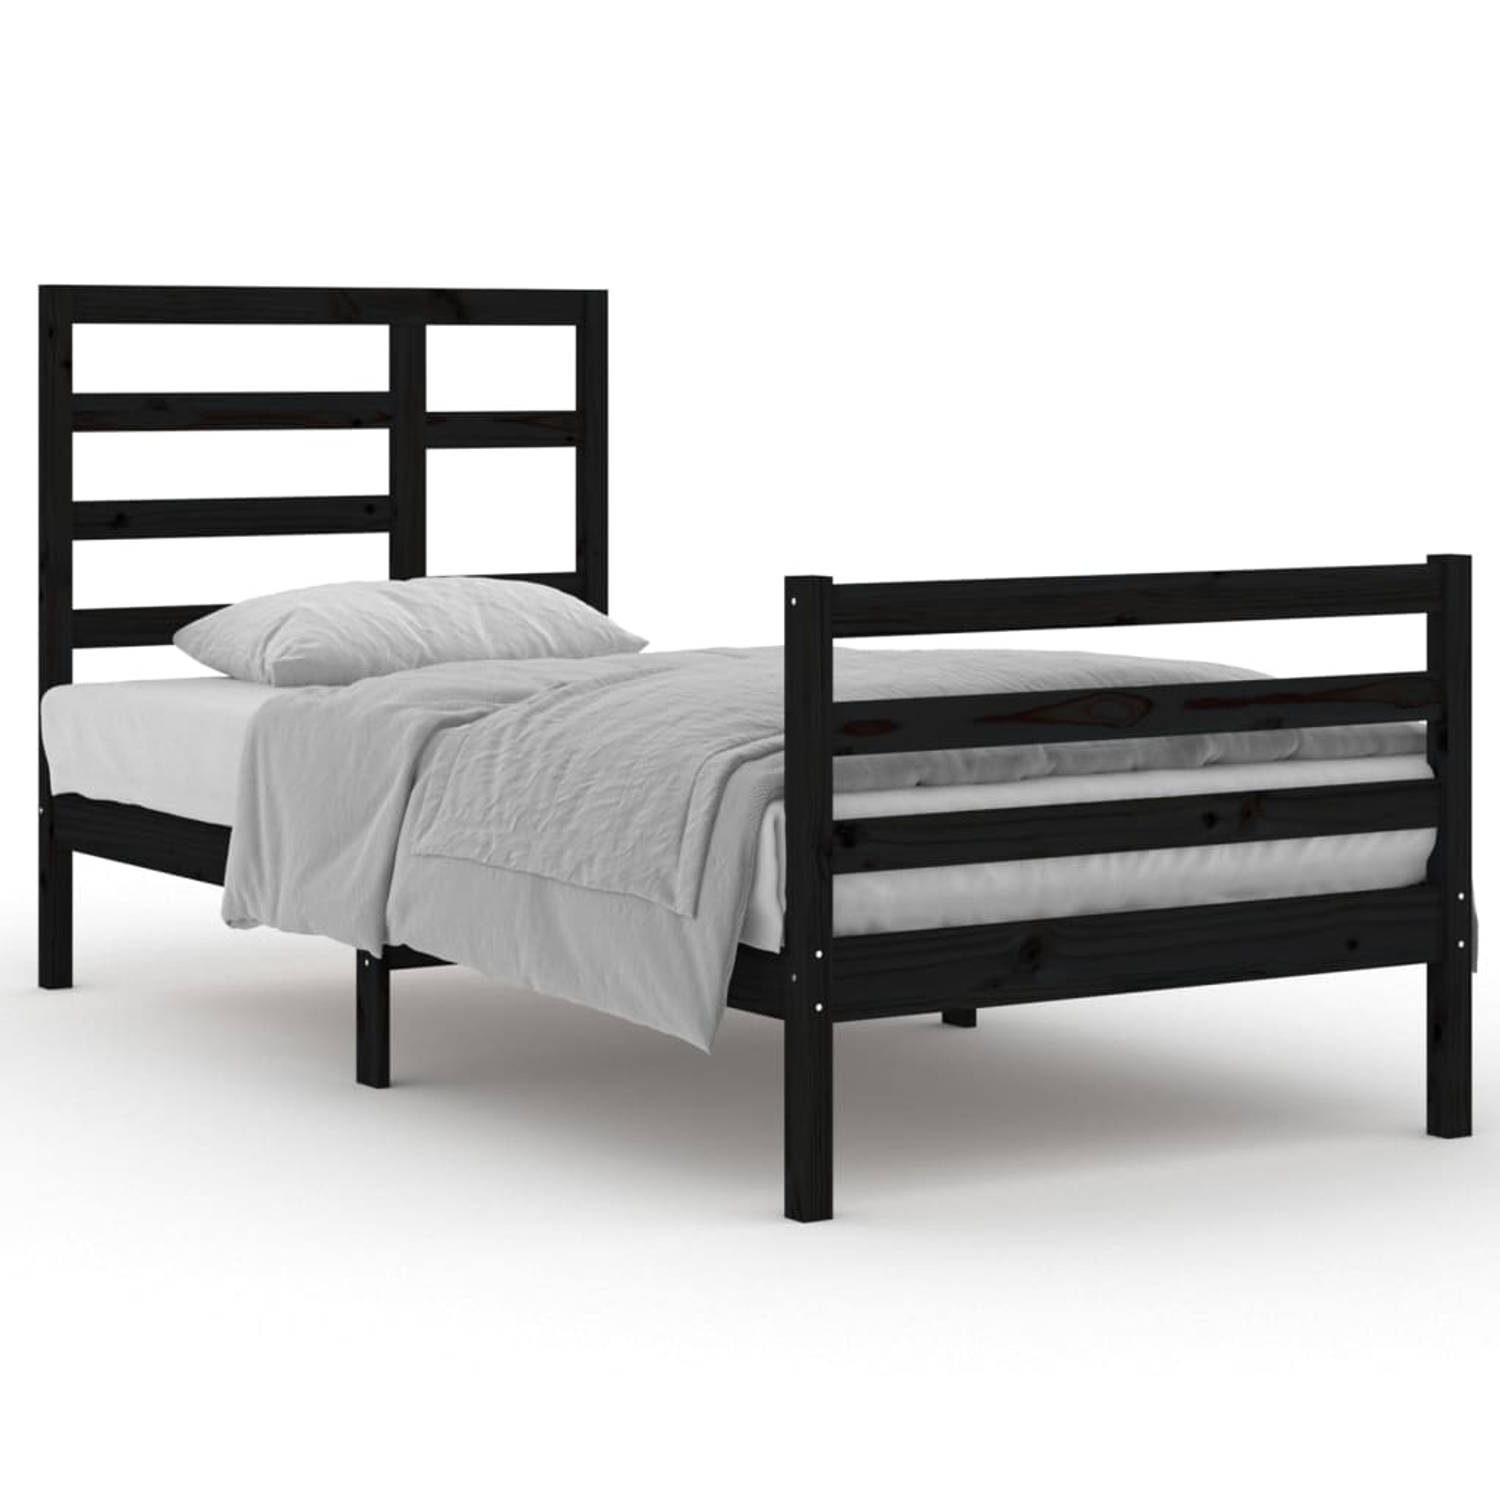 The Living Store Bedframe massief hout zwart 90x200 cm - Bedframe - Bedframes - Bed - Bedbodem - Ledikant - Bed Frame - Massief Houten Bedframe - Slaapmeubel - Eenpersoonsbed - Bed